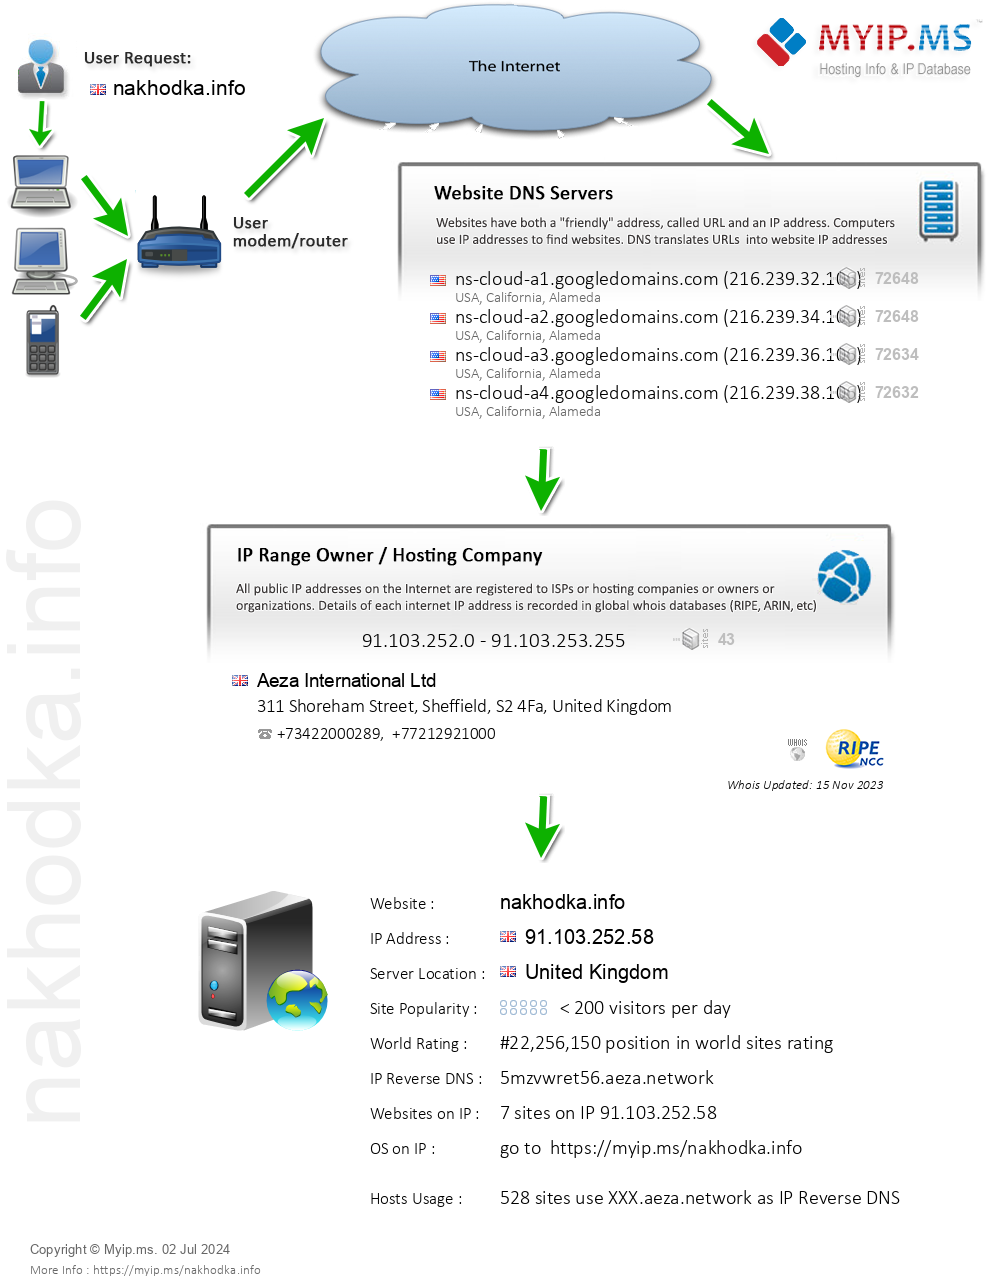 Nakhodka.info - Website Hosting Visual IP Diagram